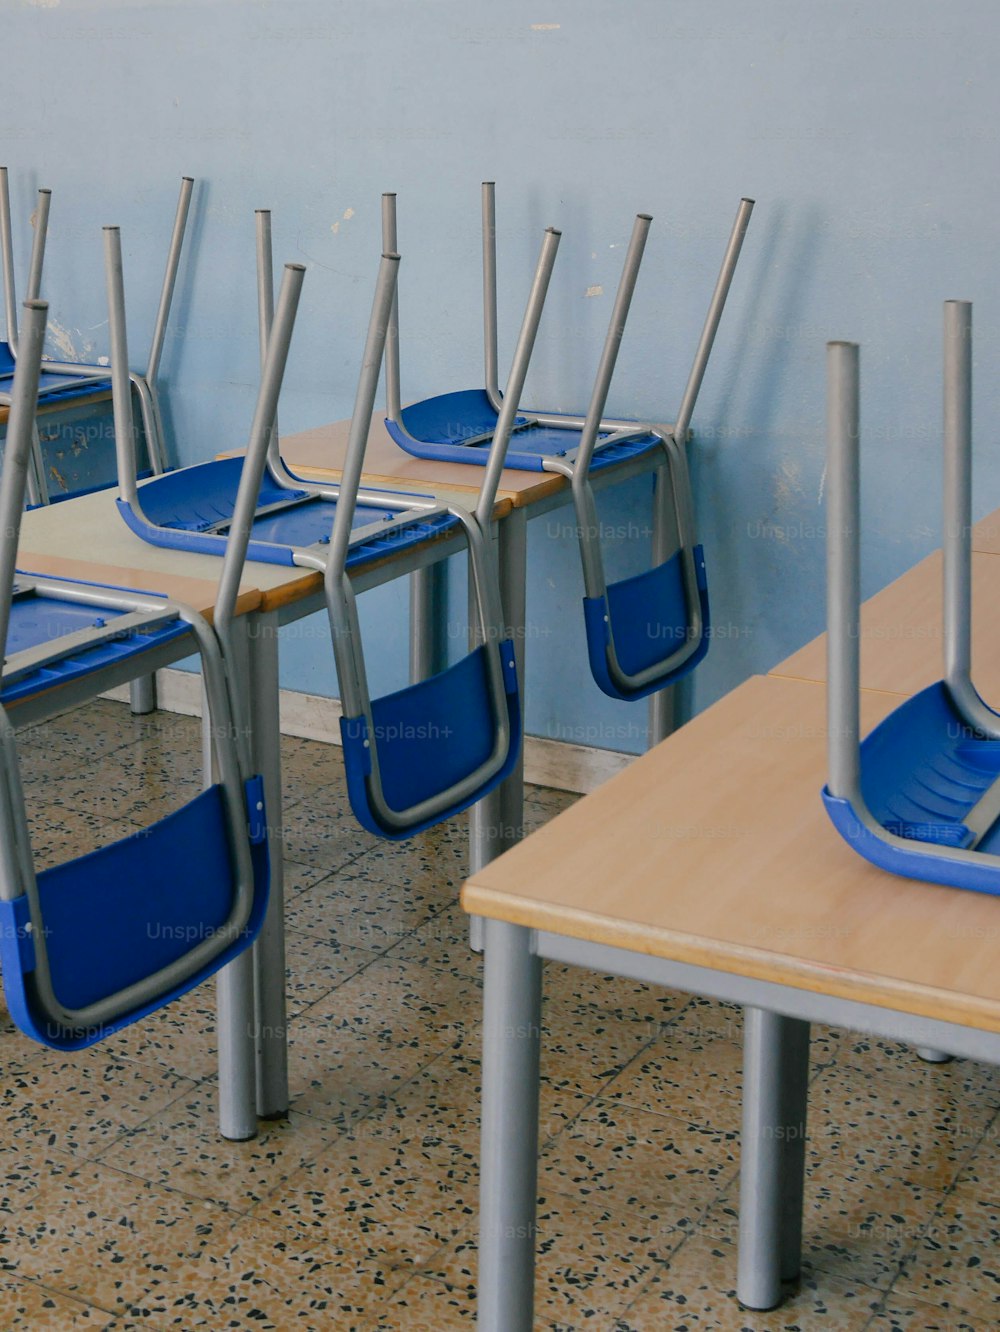 una fila di sedie blu sedute una accanto all'altra